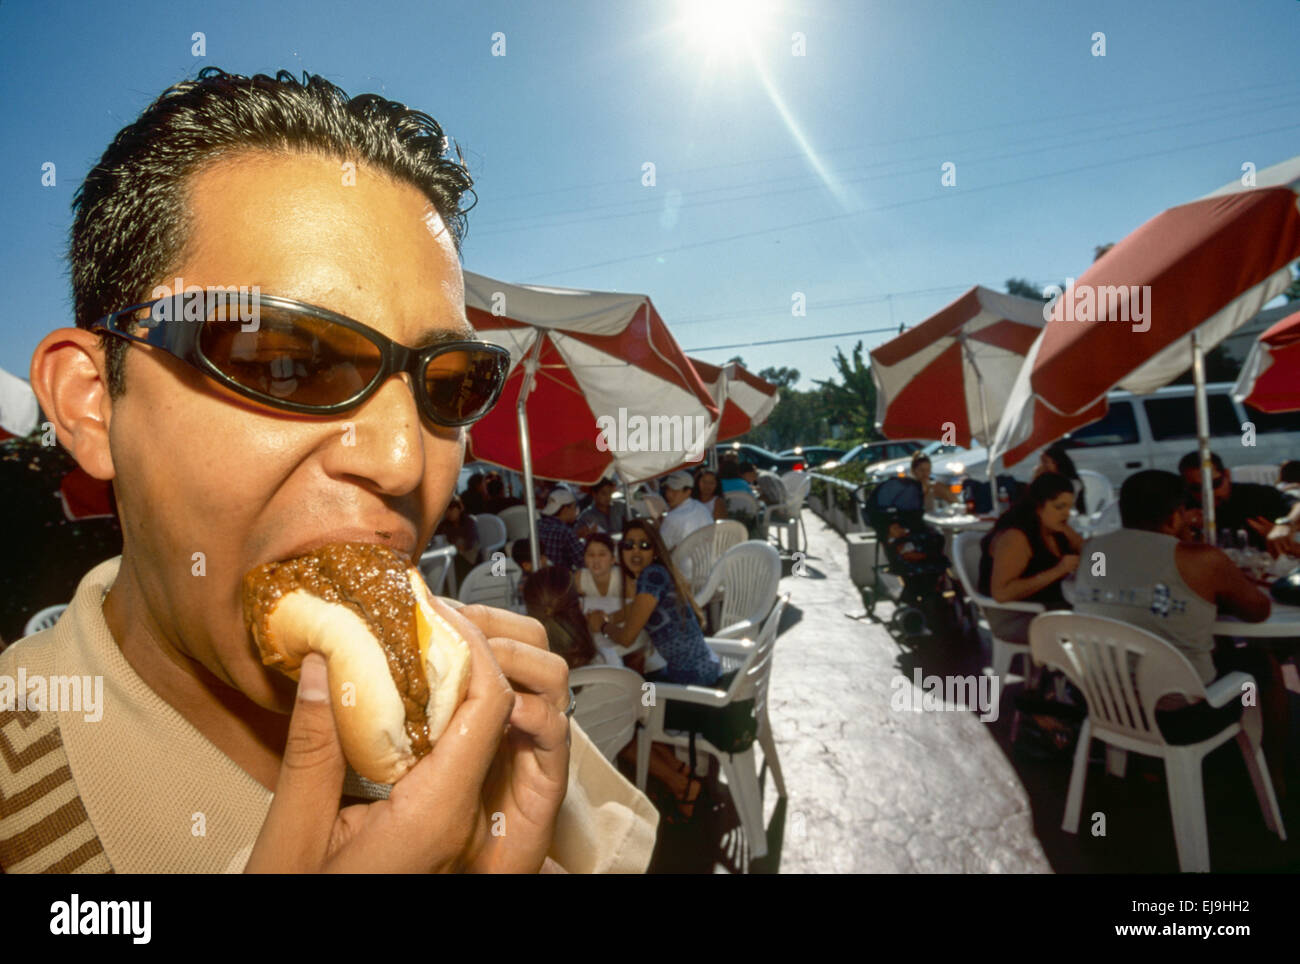 Los Angeles, CA - 24 luglio: Rosa's hot dogs celebra il suo sessantacinquesimo anno di hollywood a los angeles, la California il 24 luglio 1999. Foto Stock